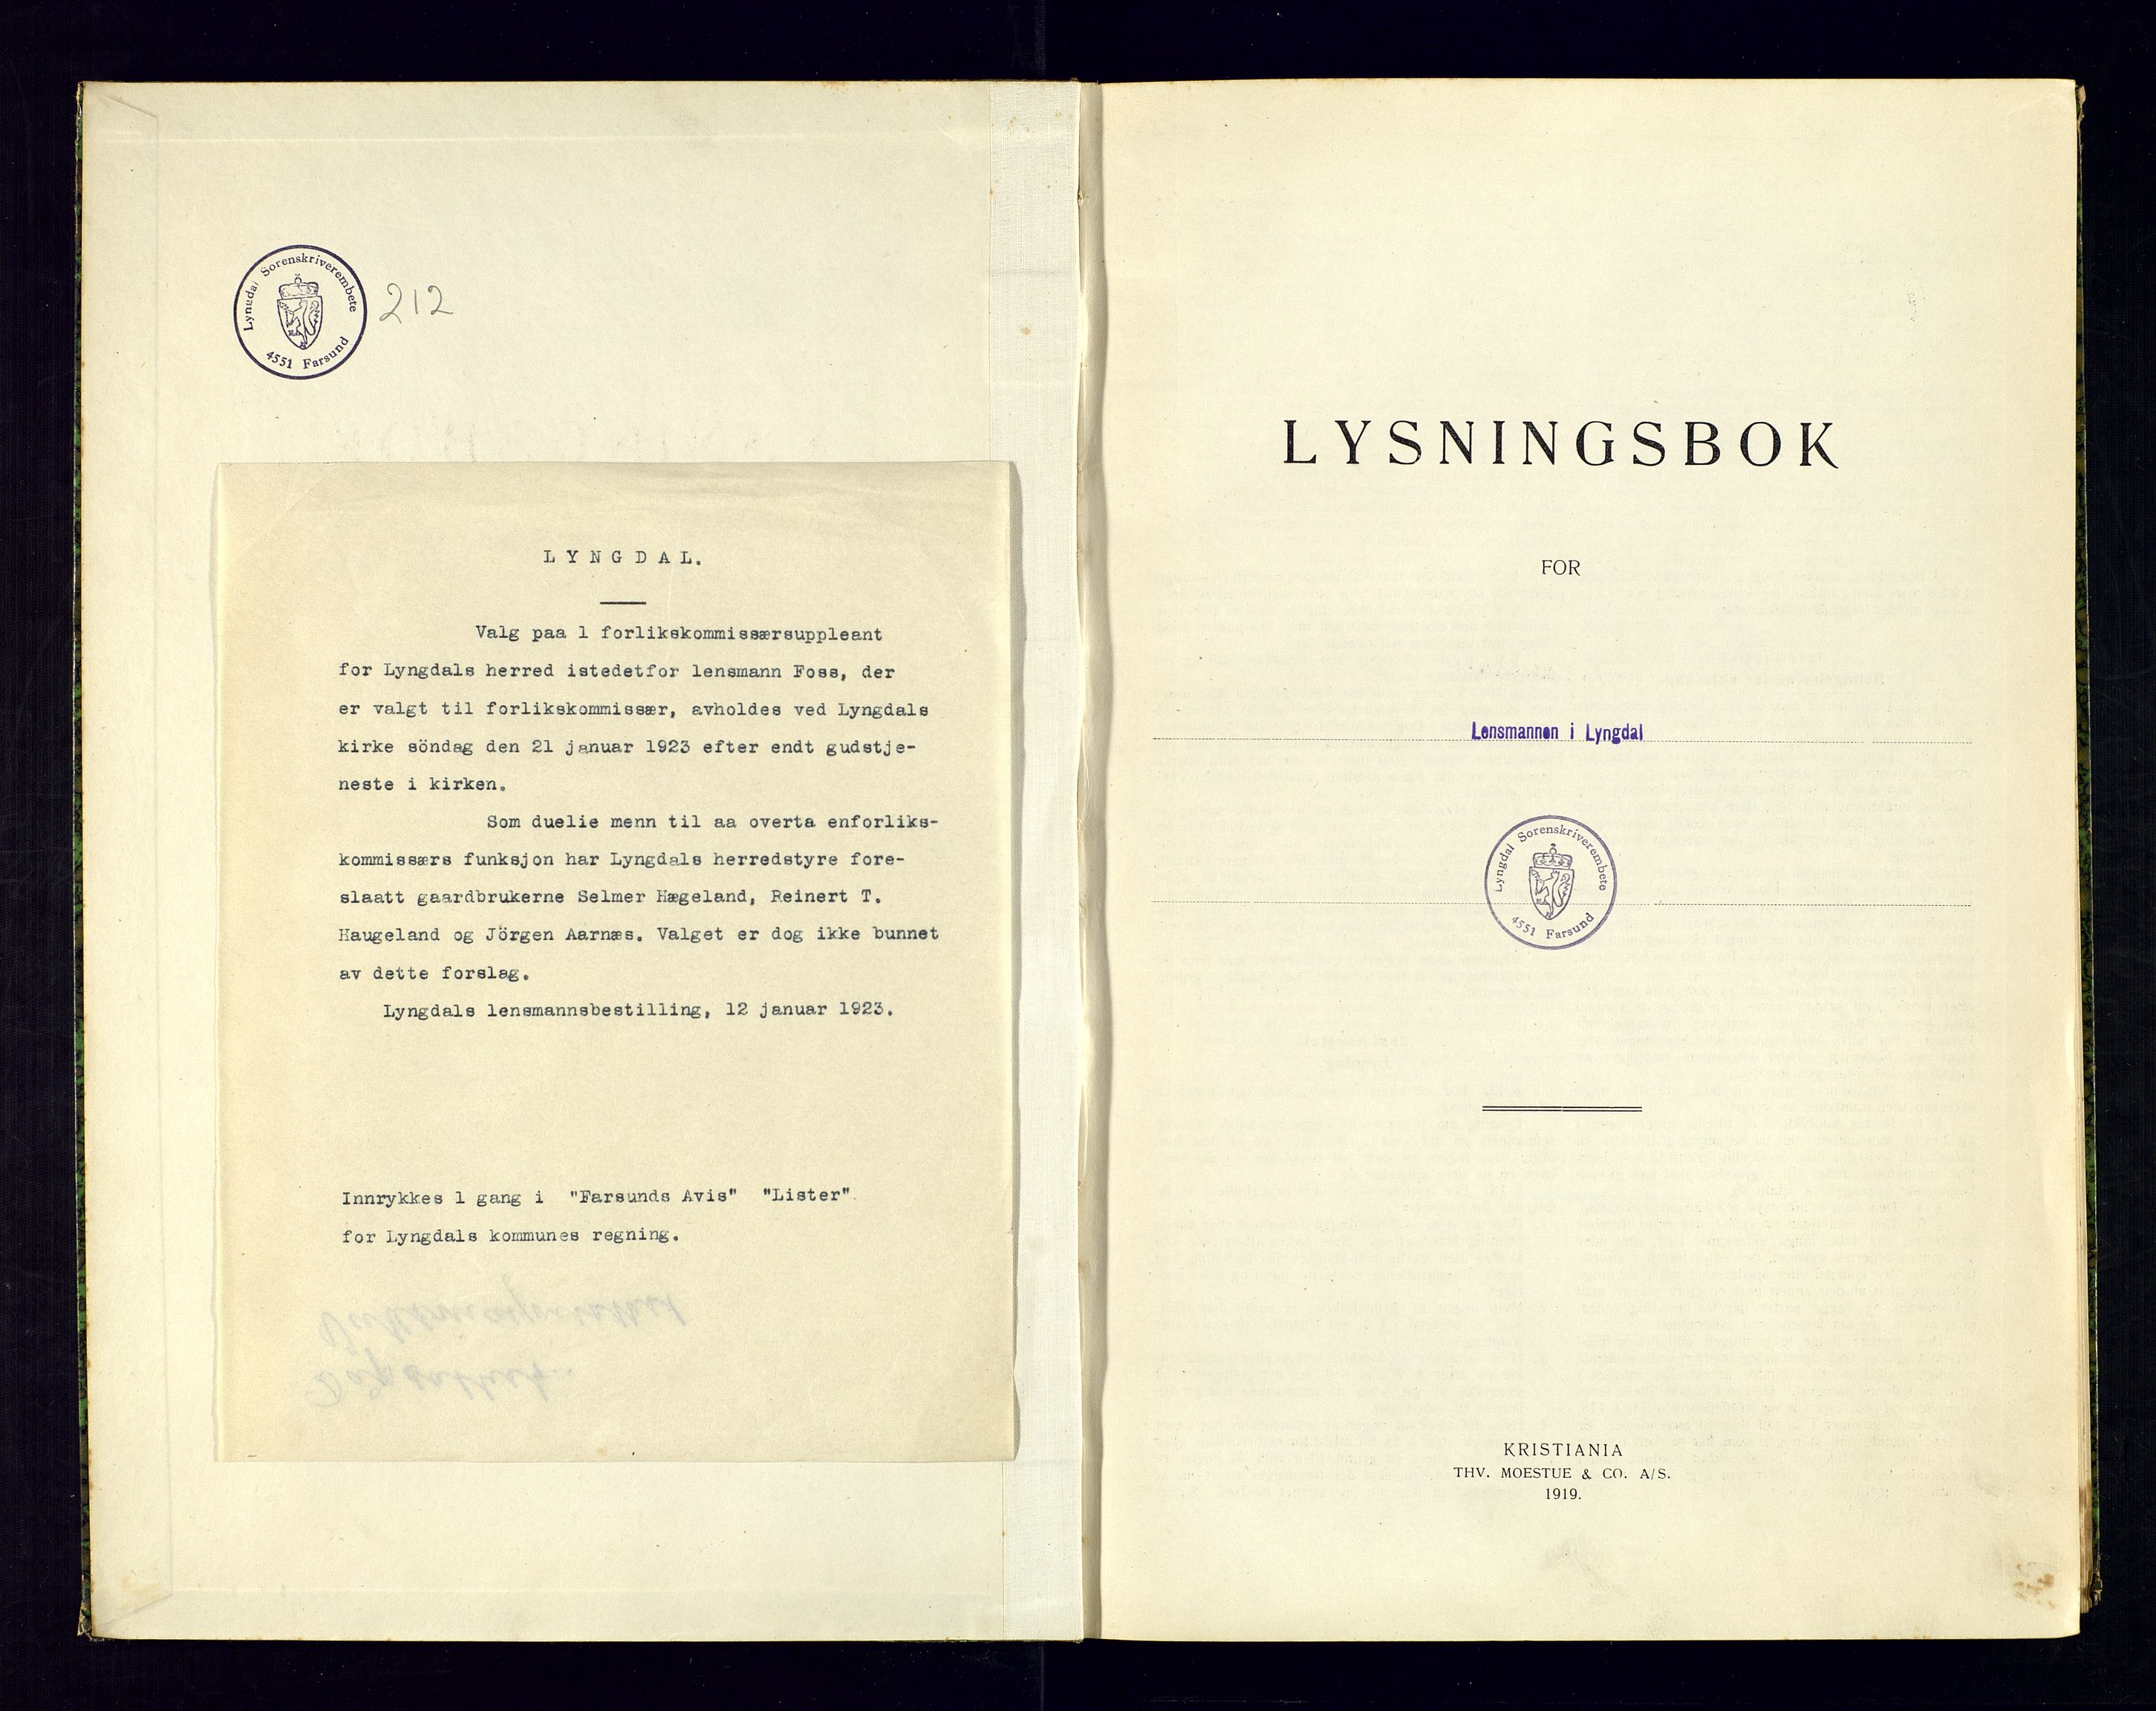 Lyngdal sorenskriveri, SAK/1221-0004/L/Ld/L0009/0001: Lysing og vigsel / Lysingsbok, 1920-1922